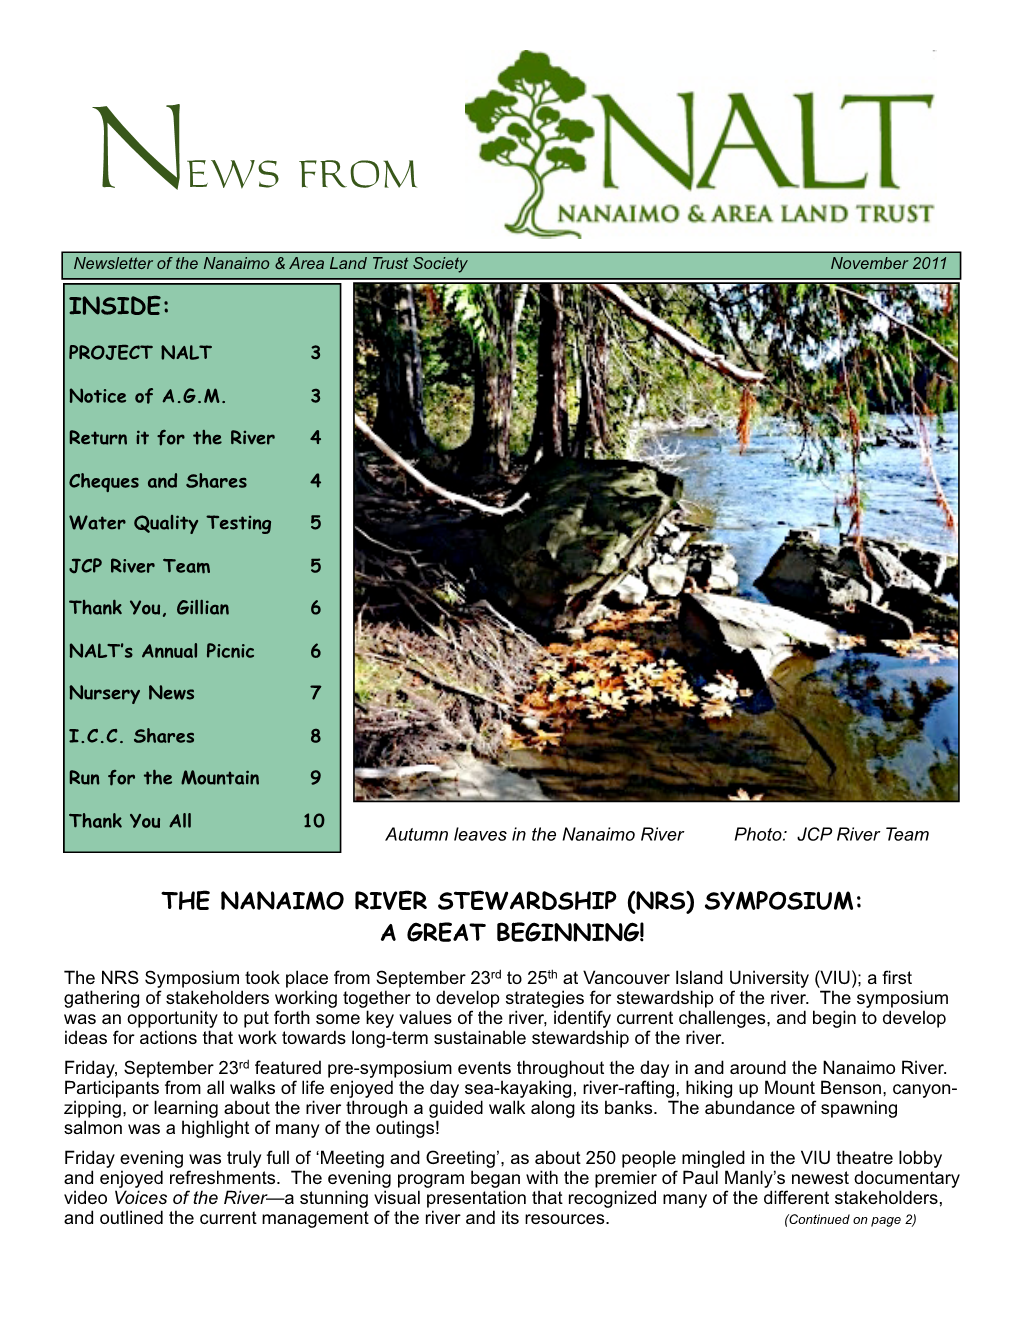 Nalt Newsletter Nov 11